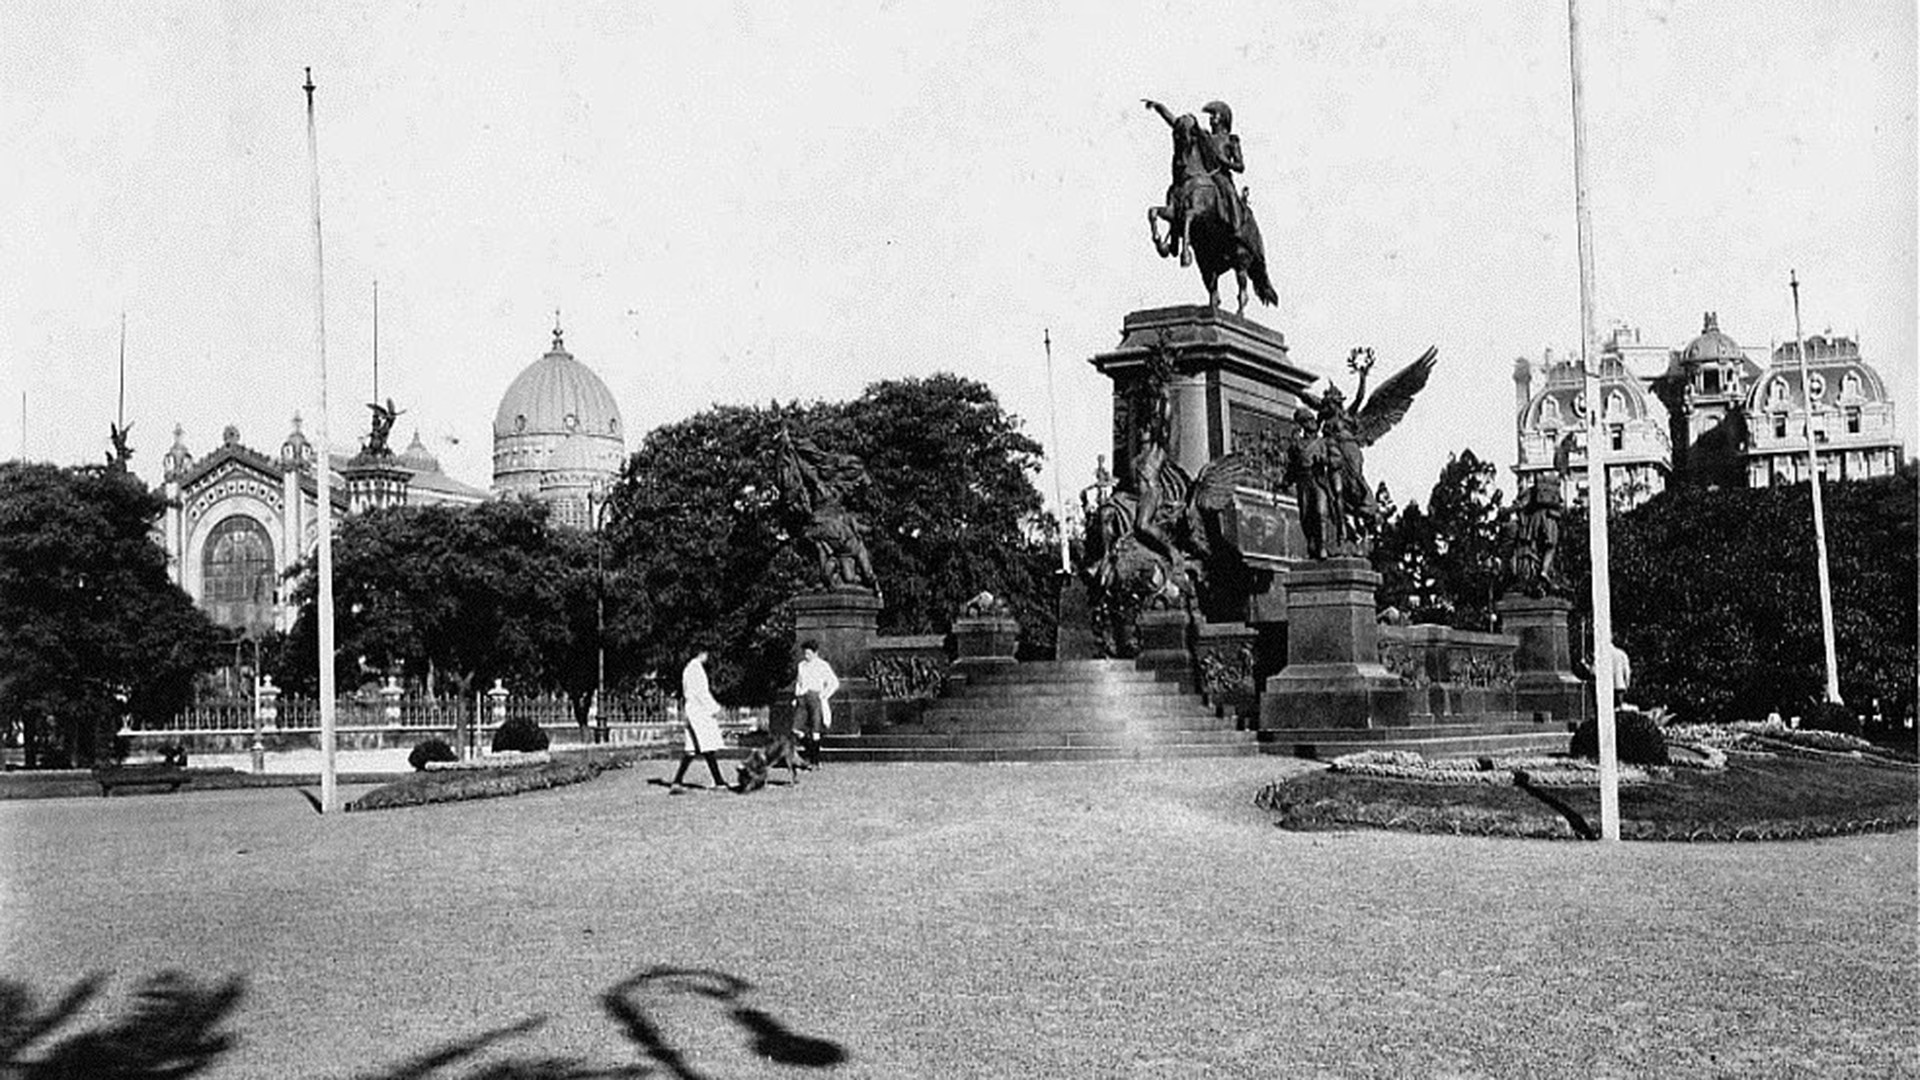 La estatua ecuestre del Libertador, realizada por Daumas, en la plaza San Martín, fue inaugurada en 1862 y luego replicada e instalada en todas las capitales del país e incluso en muchas ciudades del mundo. En Lomas de Zamora decidieron encargar un monumento original